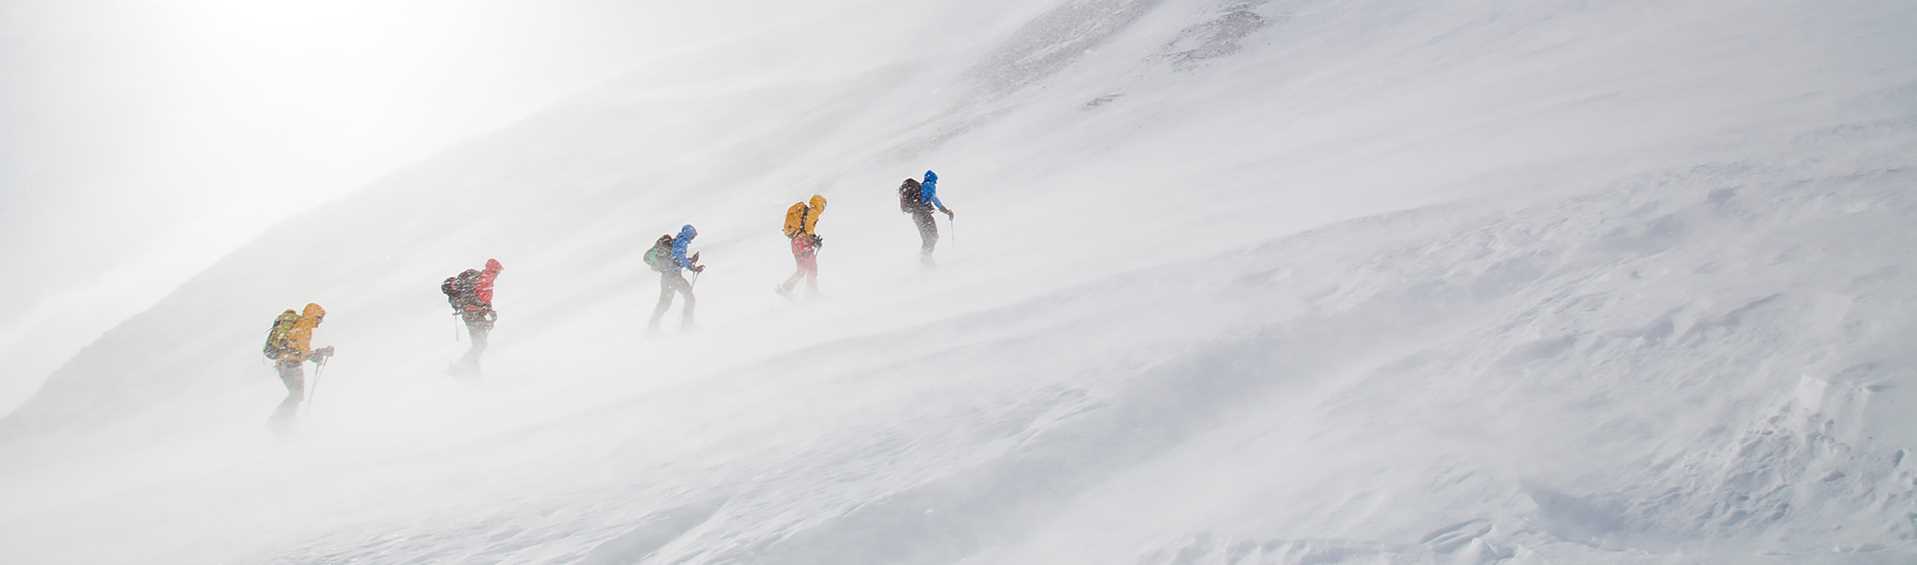 En grupp skidåkarefärdas genom en snöstorm